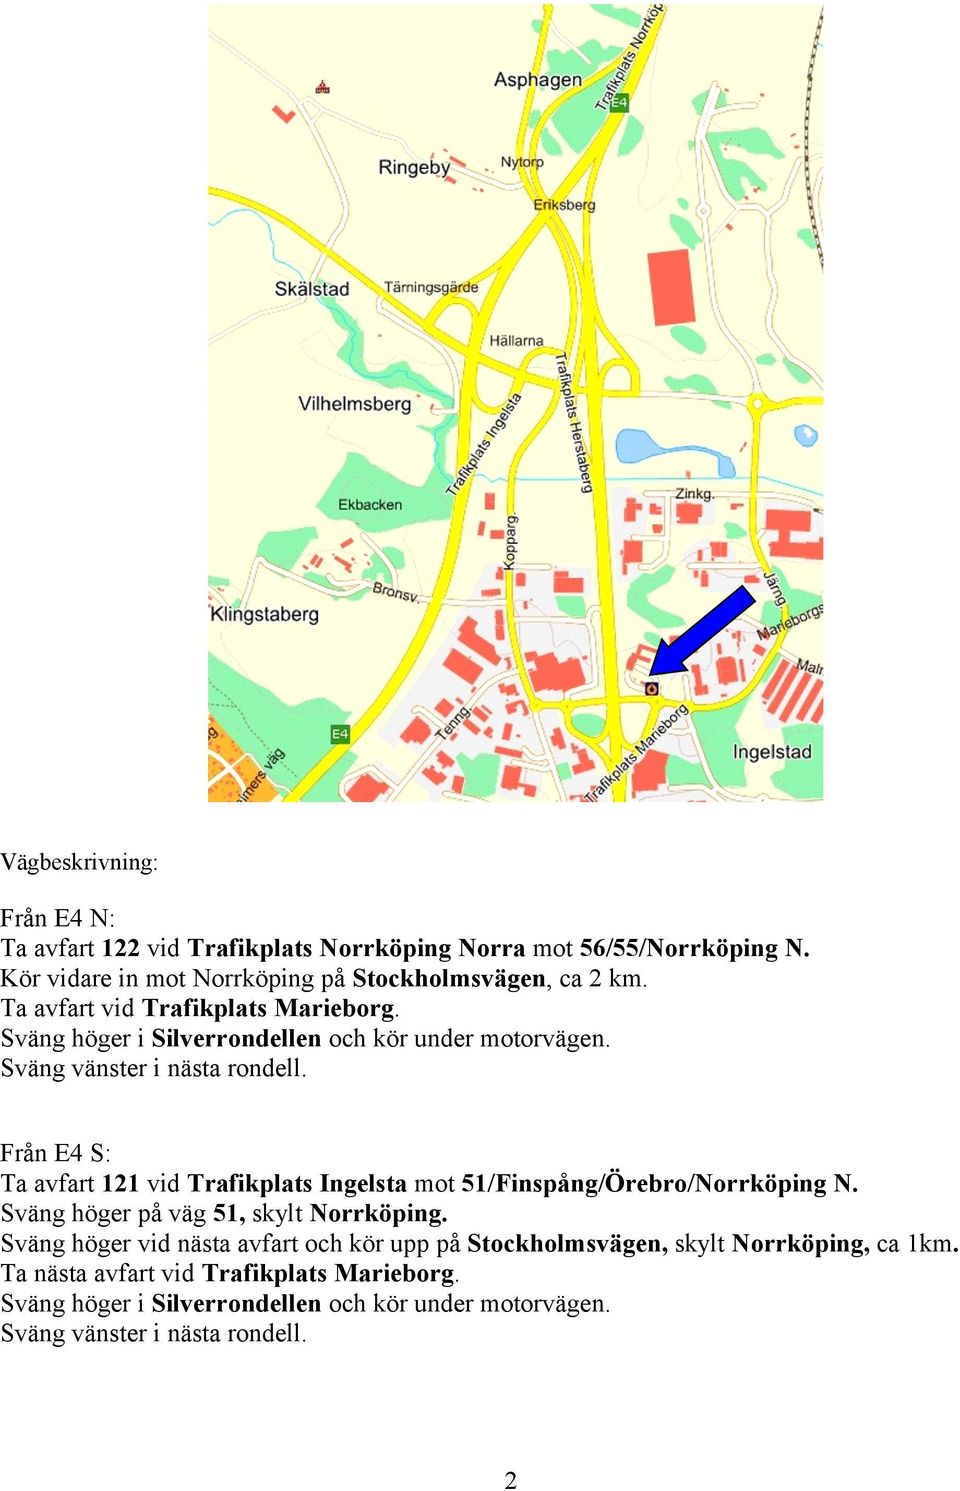 Från E4 S: Ta avfart 121 vid Trafikplats Ingelsta mot 51/Finspång/Örebro/Norrköping N. Sväng höger på väg 51, skylt Norrköping.